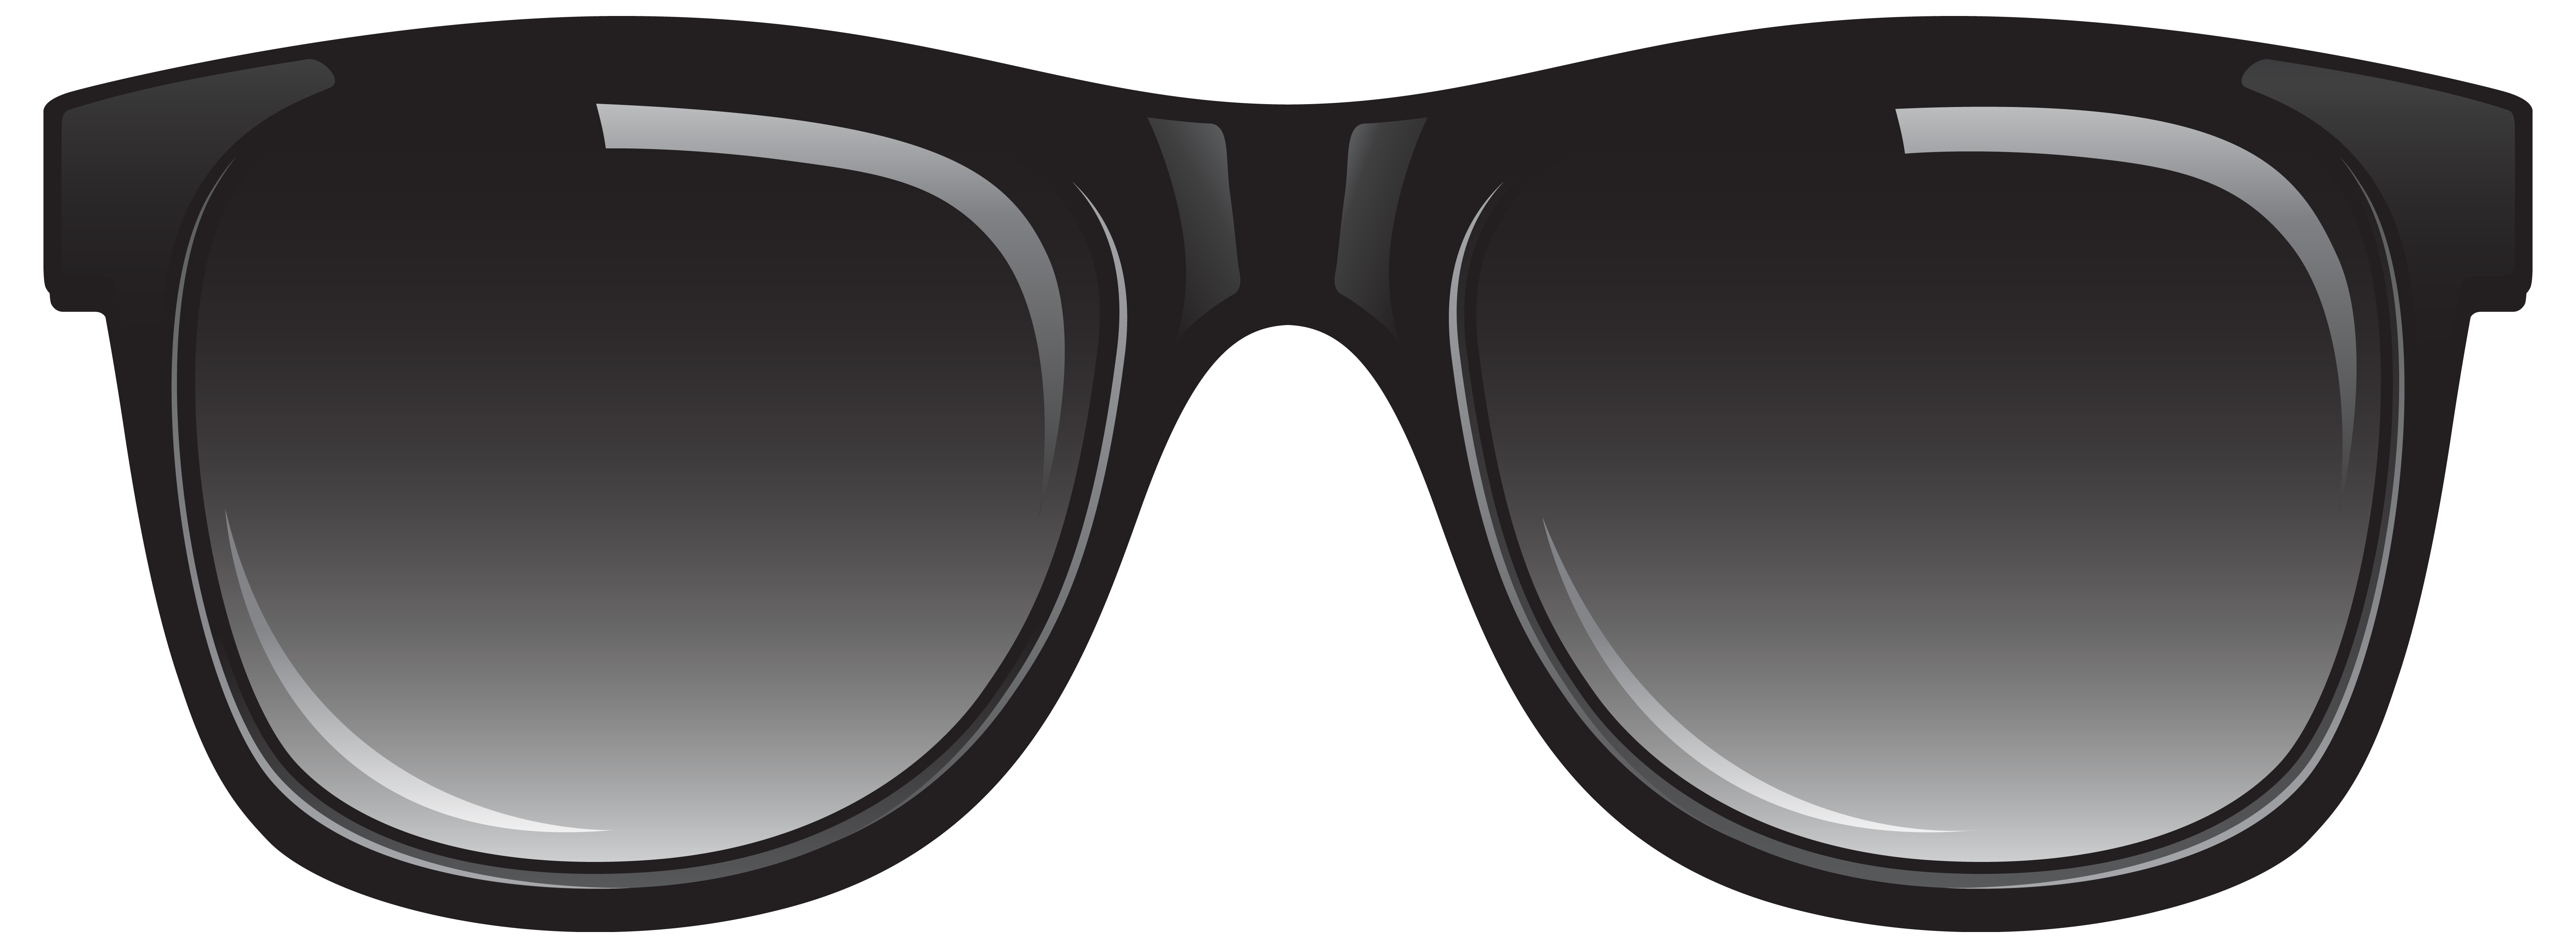 Sunglasses clipart free clip  - Sunglasses Clipart